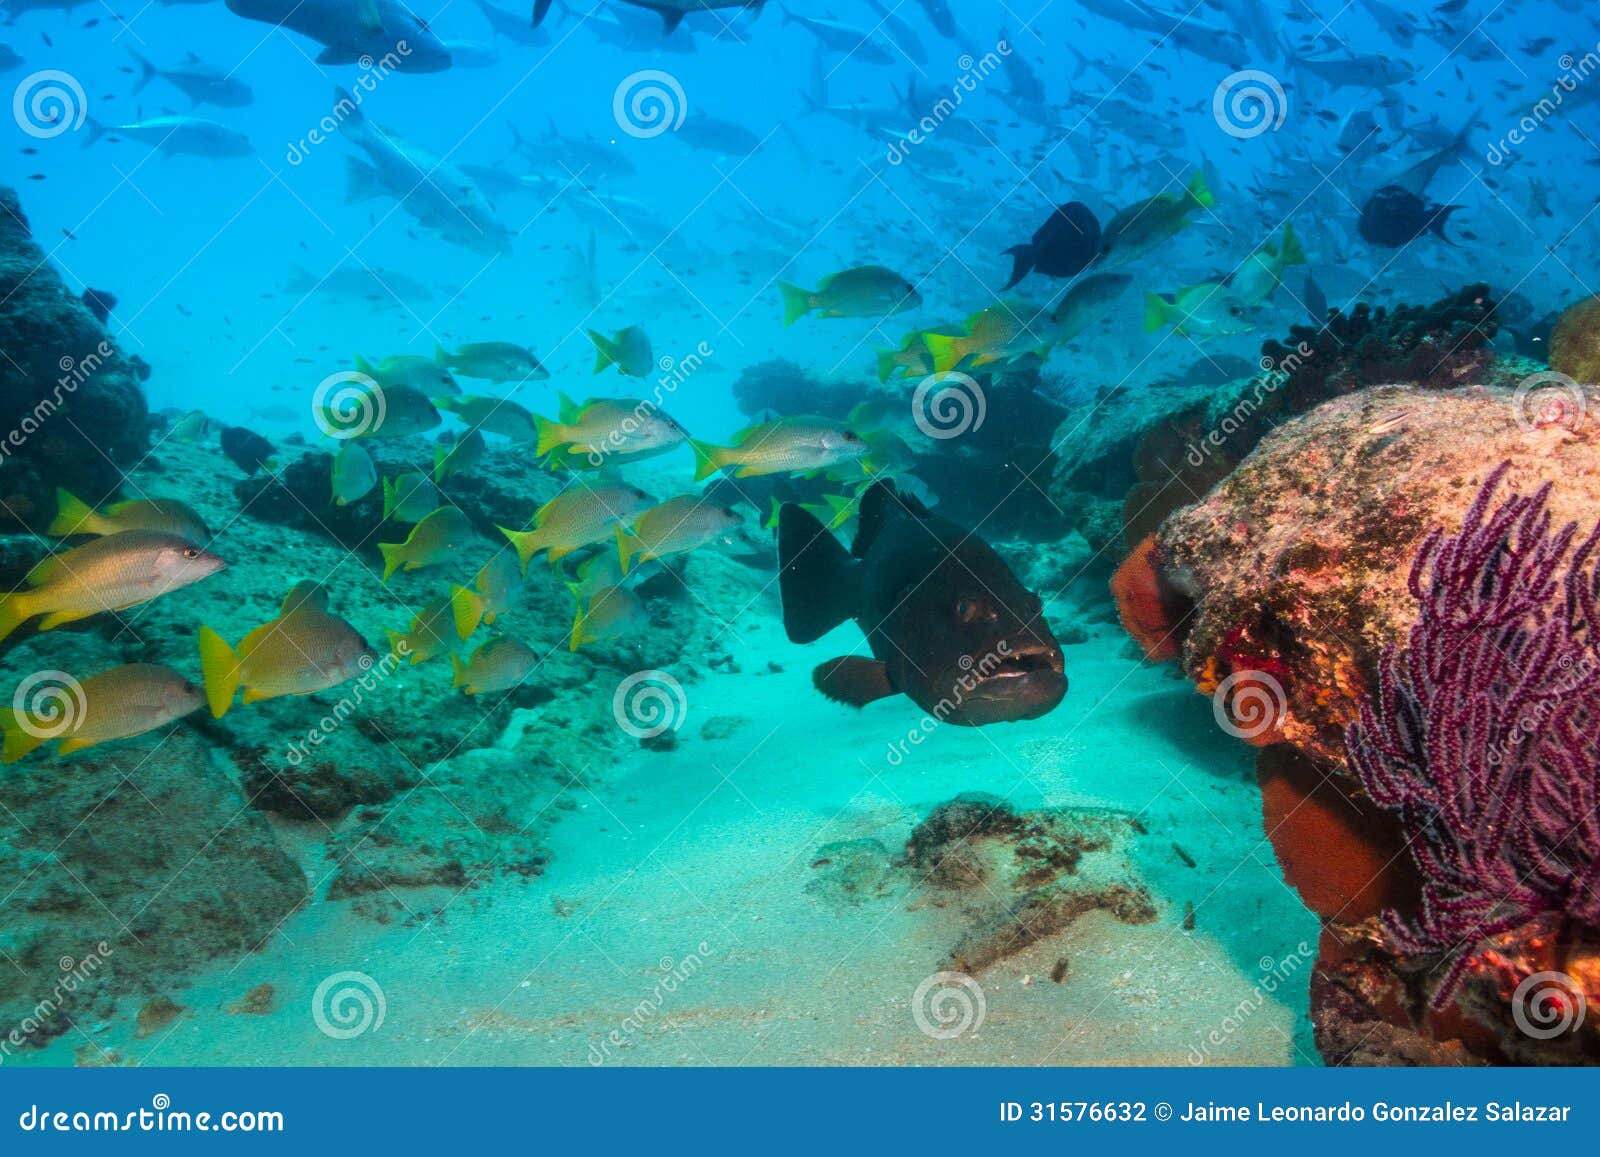 豹子石斑鱼或Mycteroperca rosacea 库存照片. 图片 包括有 加利福尼亚, 中央, 石斑鱼 - 56672304